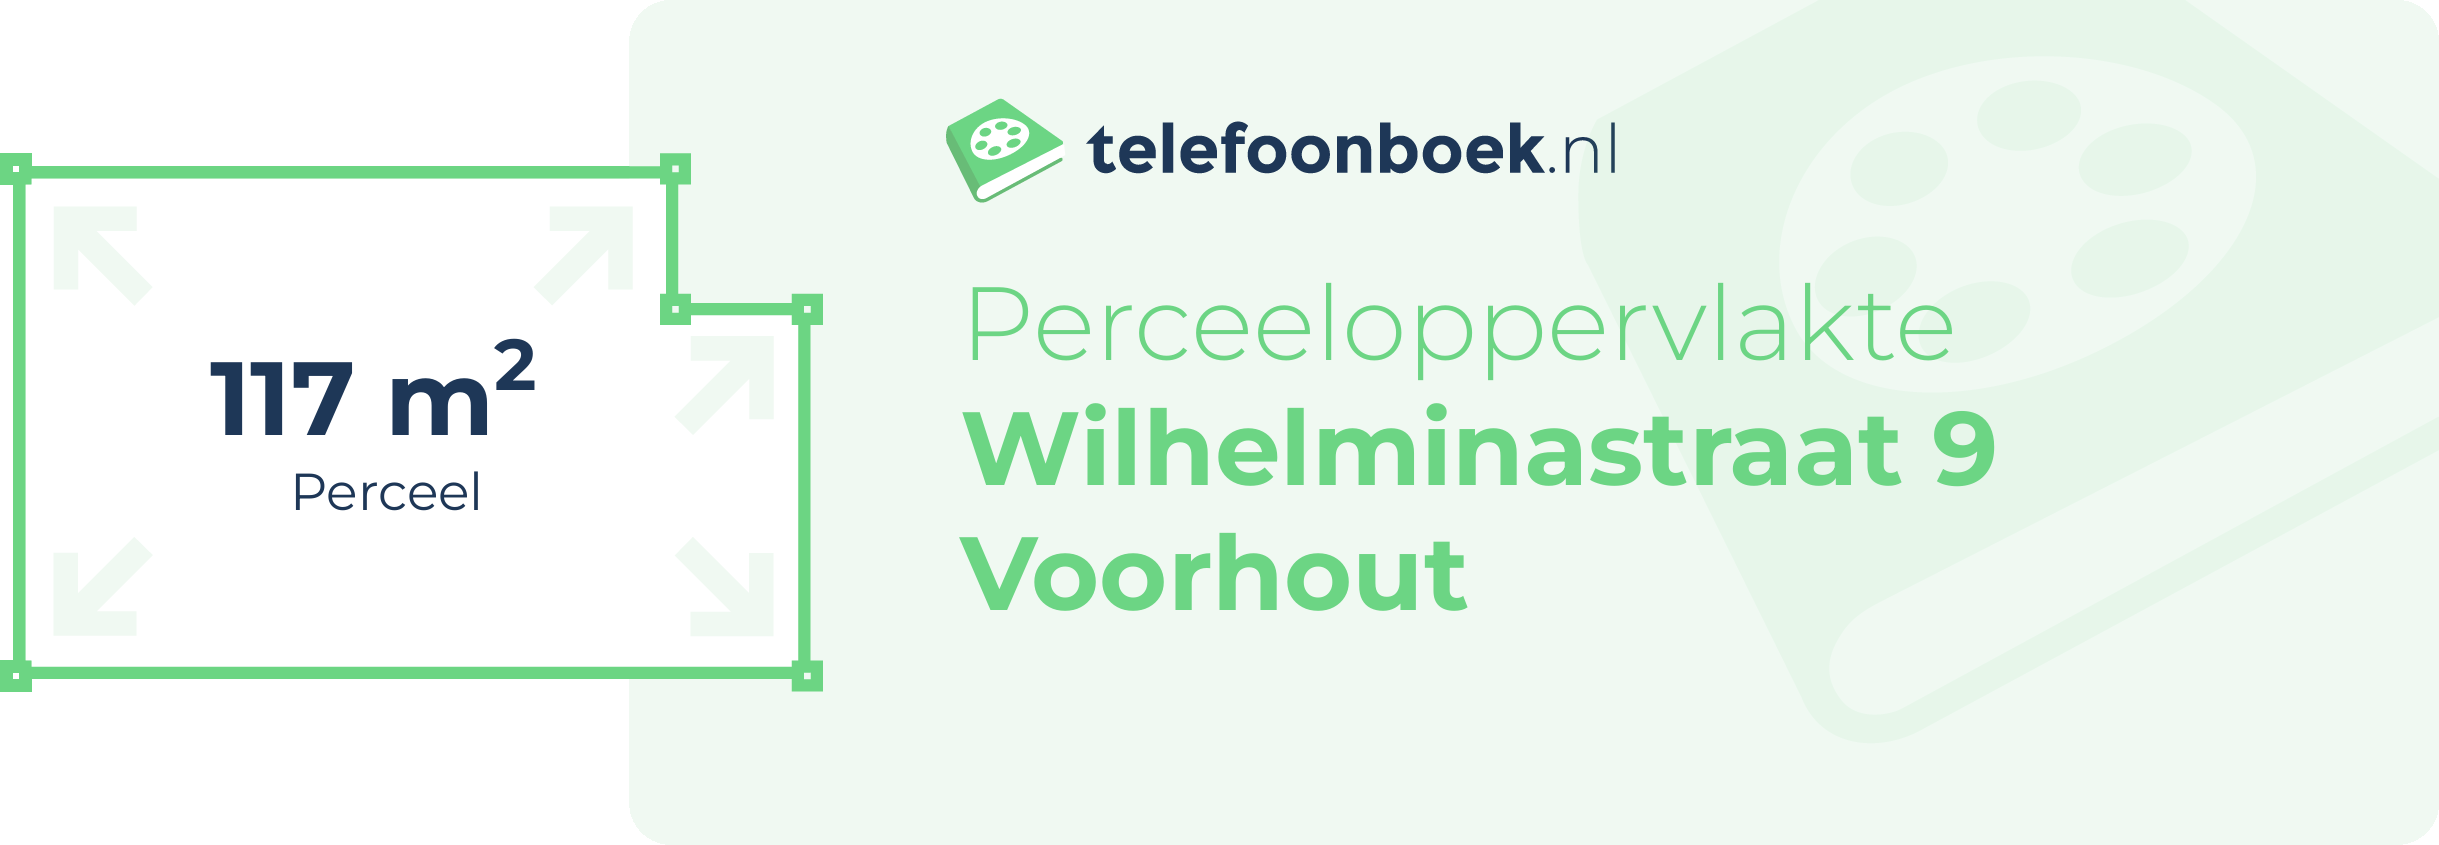 Perceeloppervlakte Wilhelminastraat 9 Voorhout